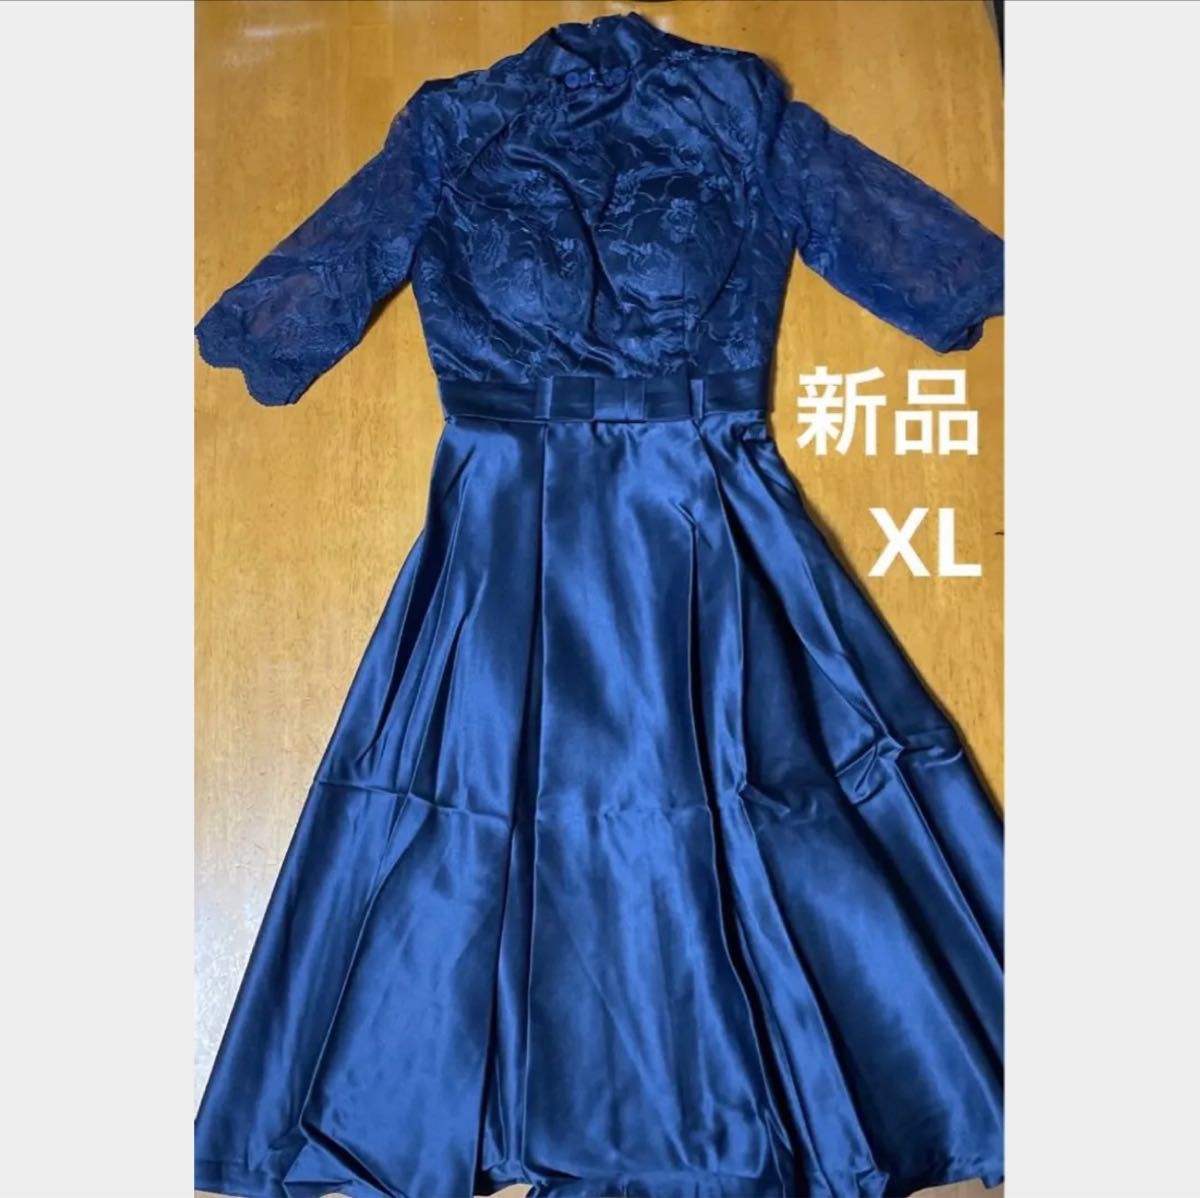 レディース フォーマル パーティー カラー ドレス ウェディング ブルー ネイビー XL 大きいサイズ